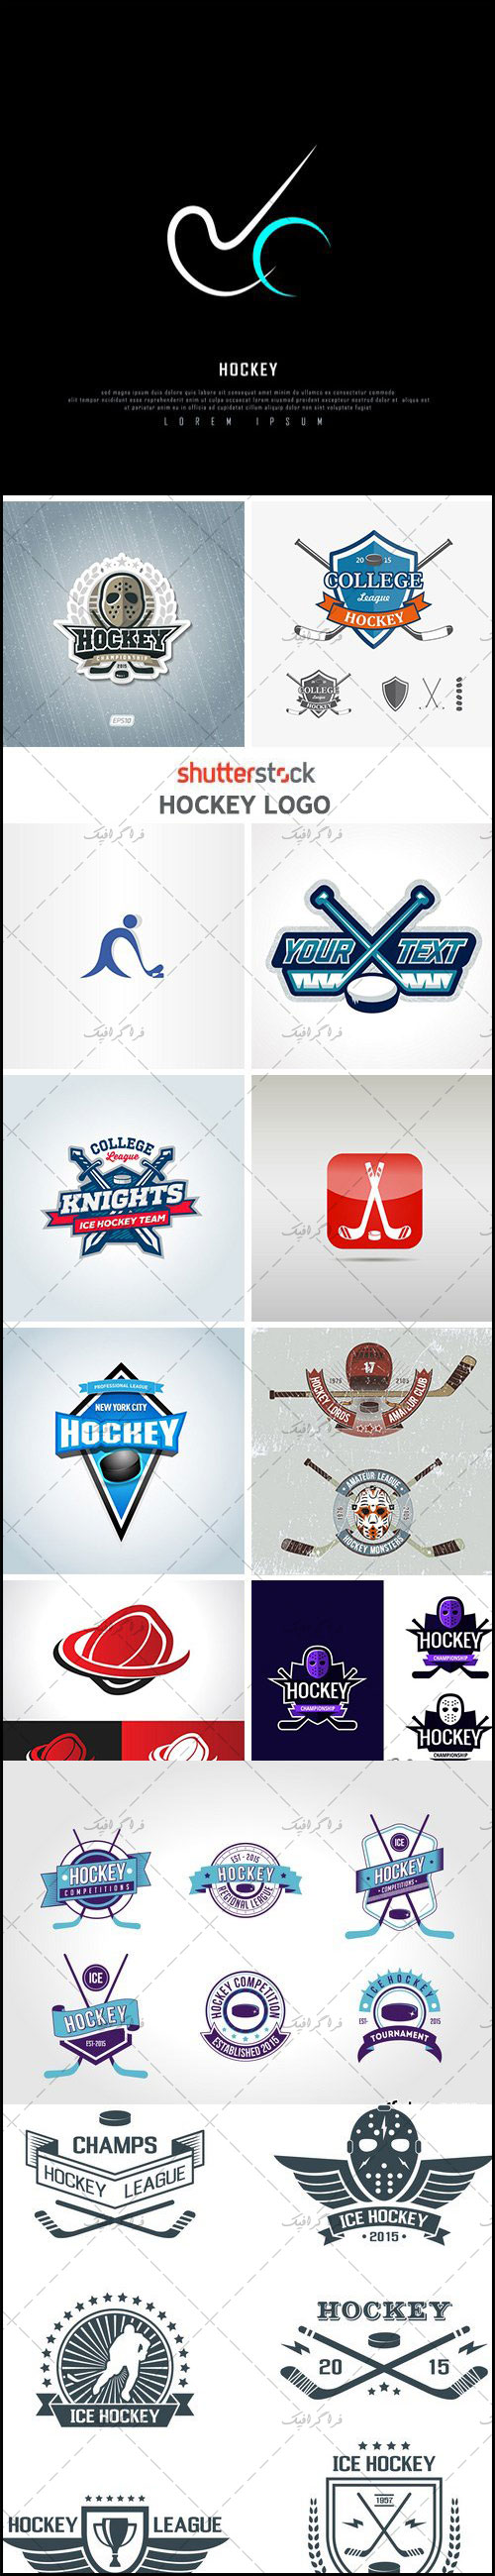 دانلود لوگو های ورزش هاکی - Hockey Logo